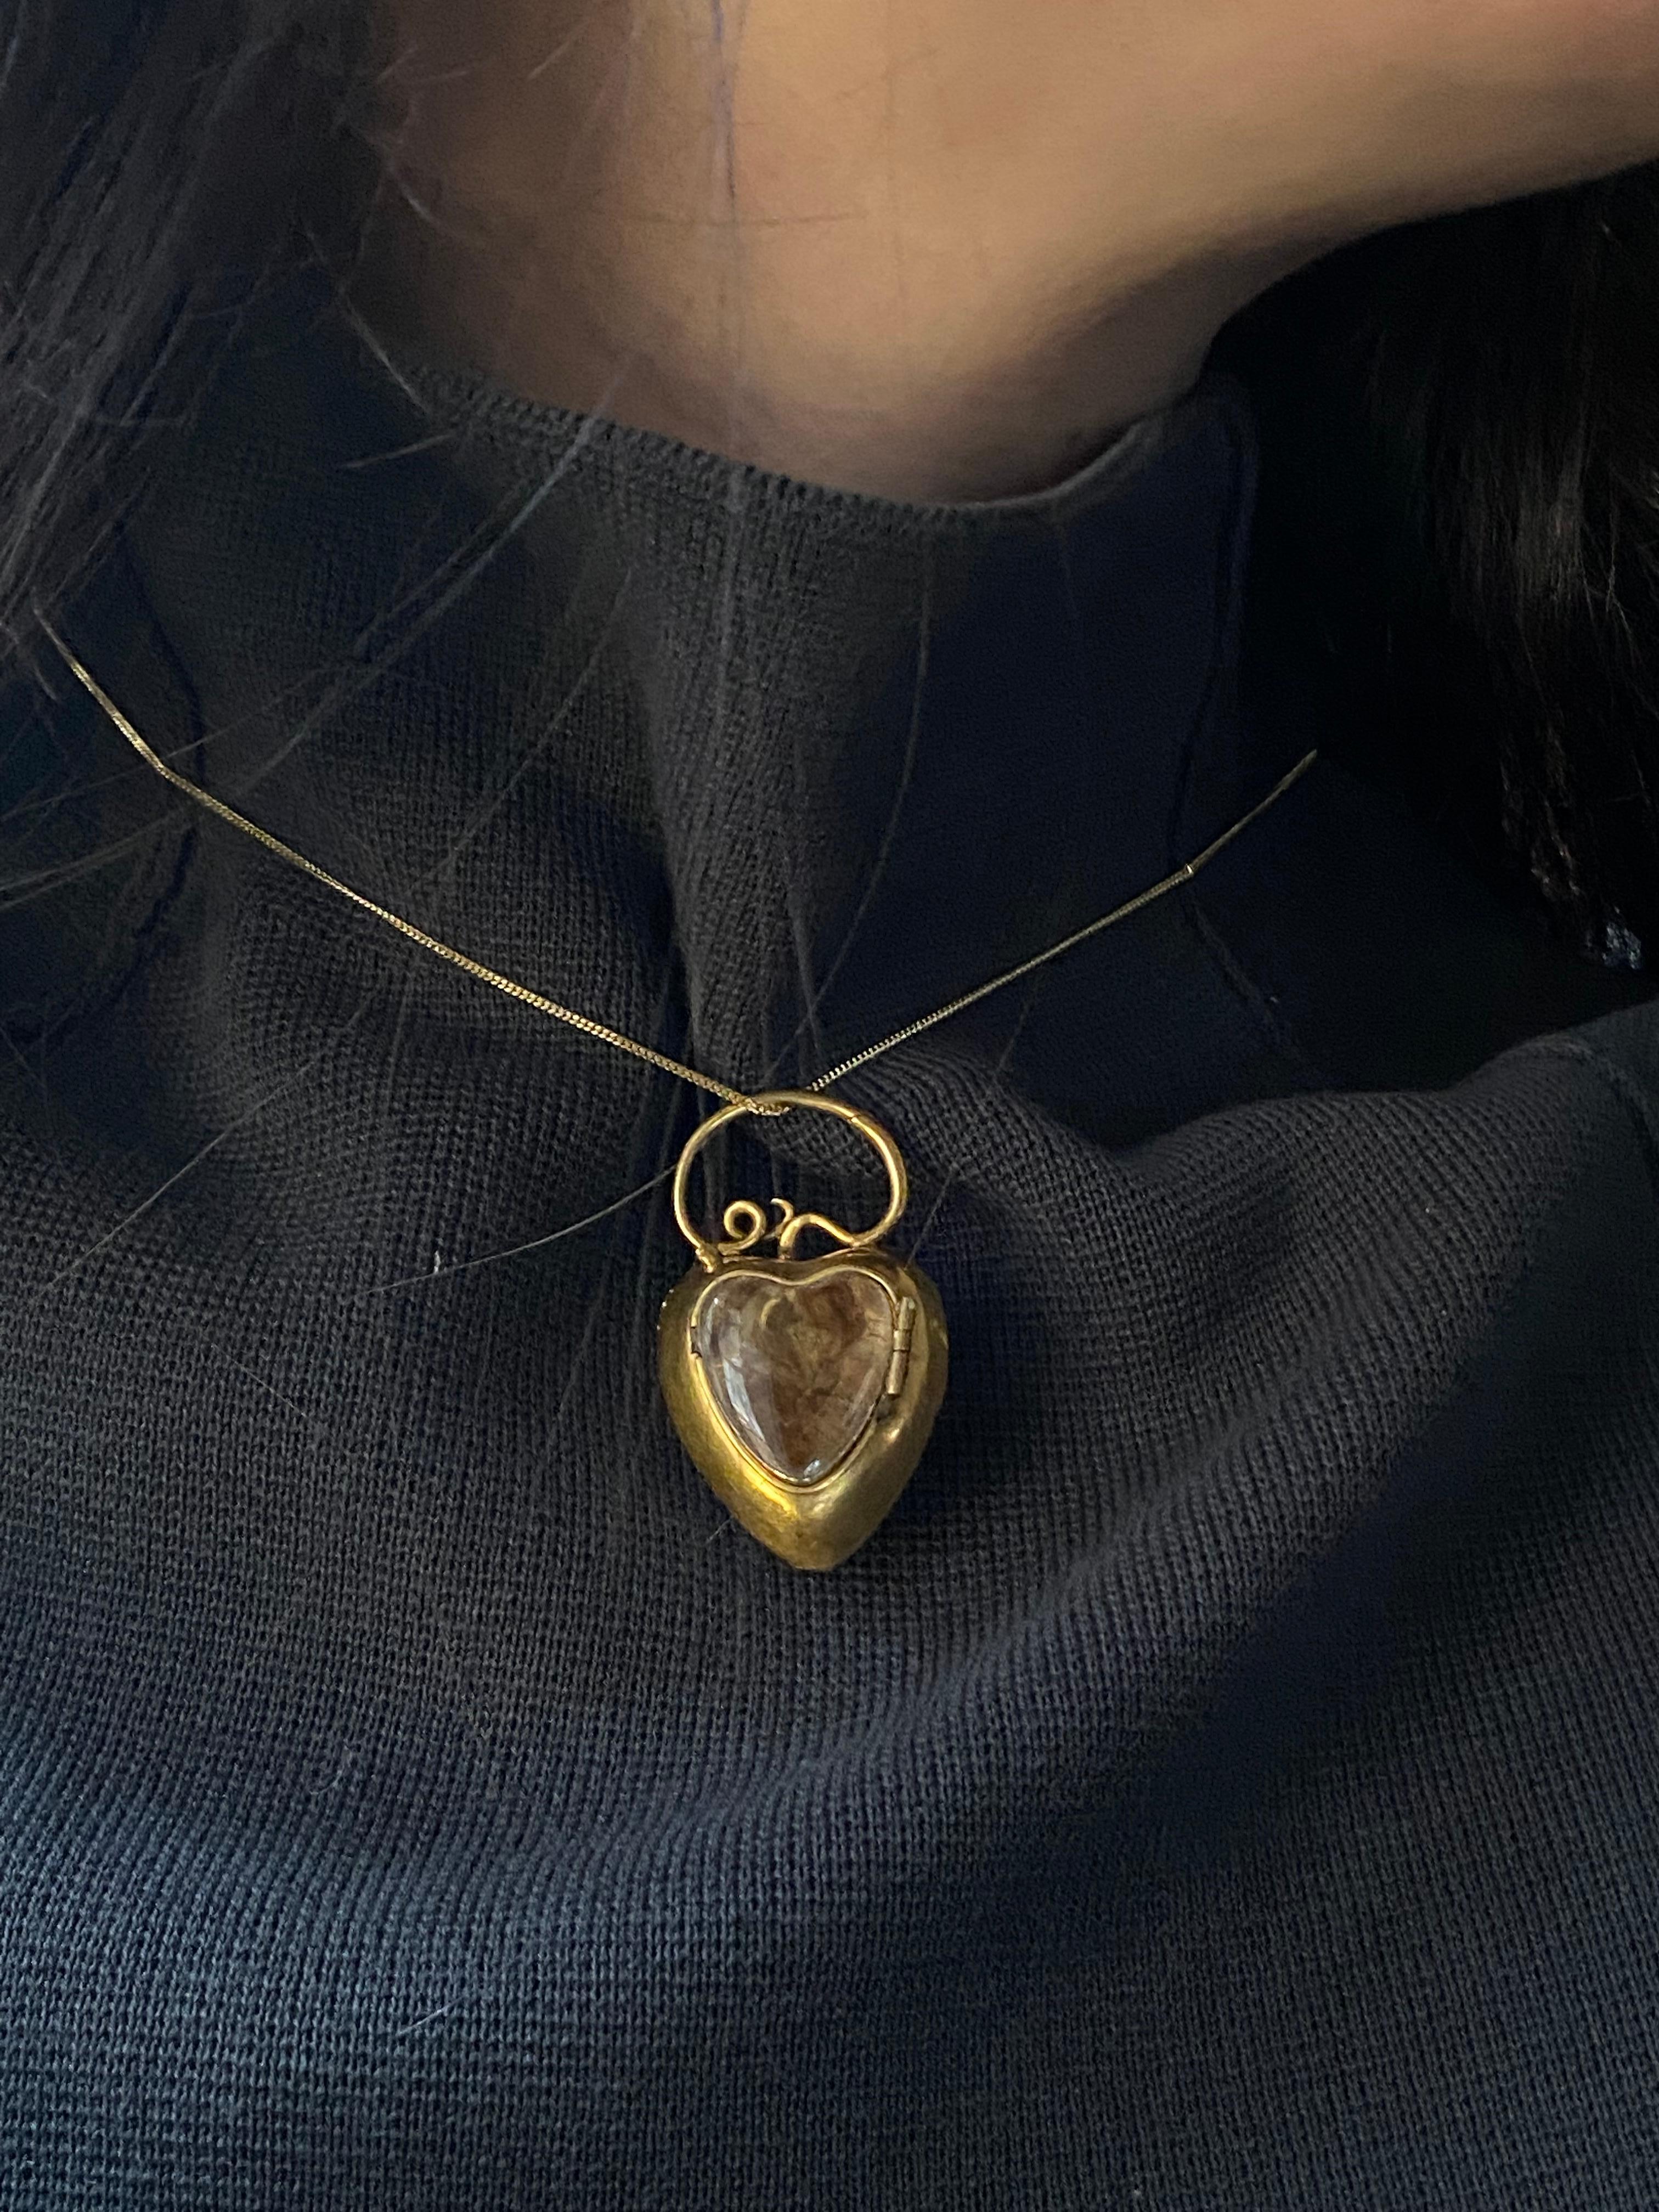 Georgian 18 Karat Gold Heart Shaped Locket Pendant with Snake Motif 4